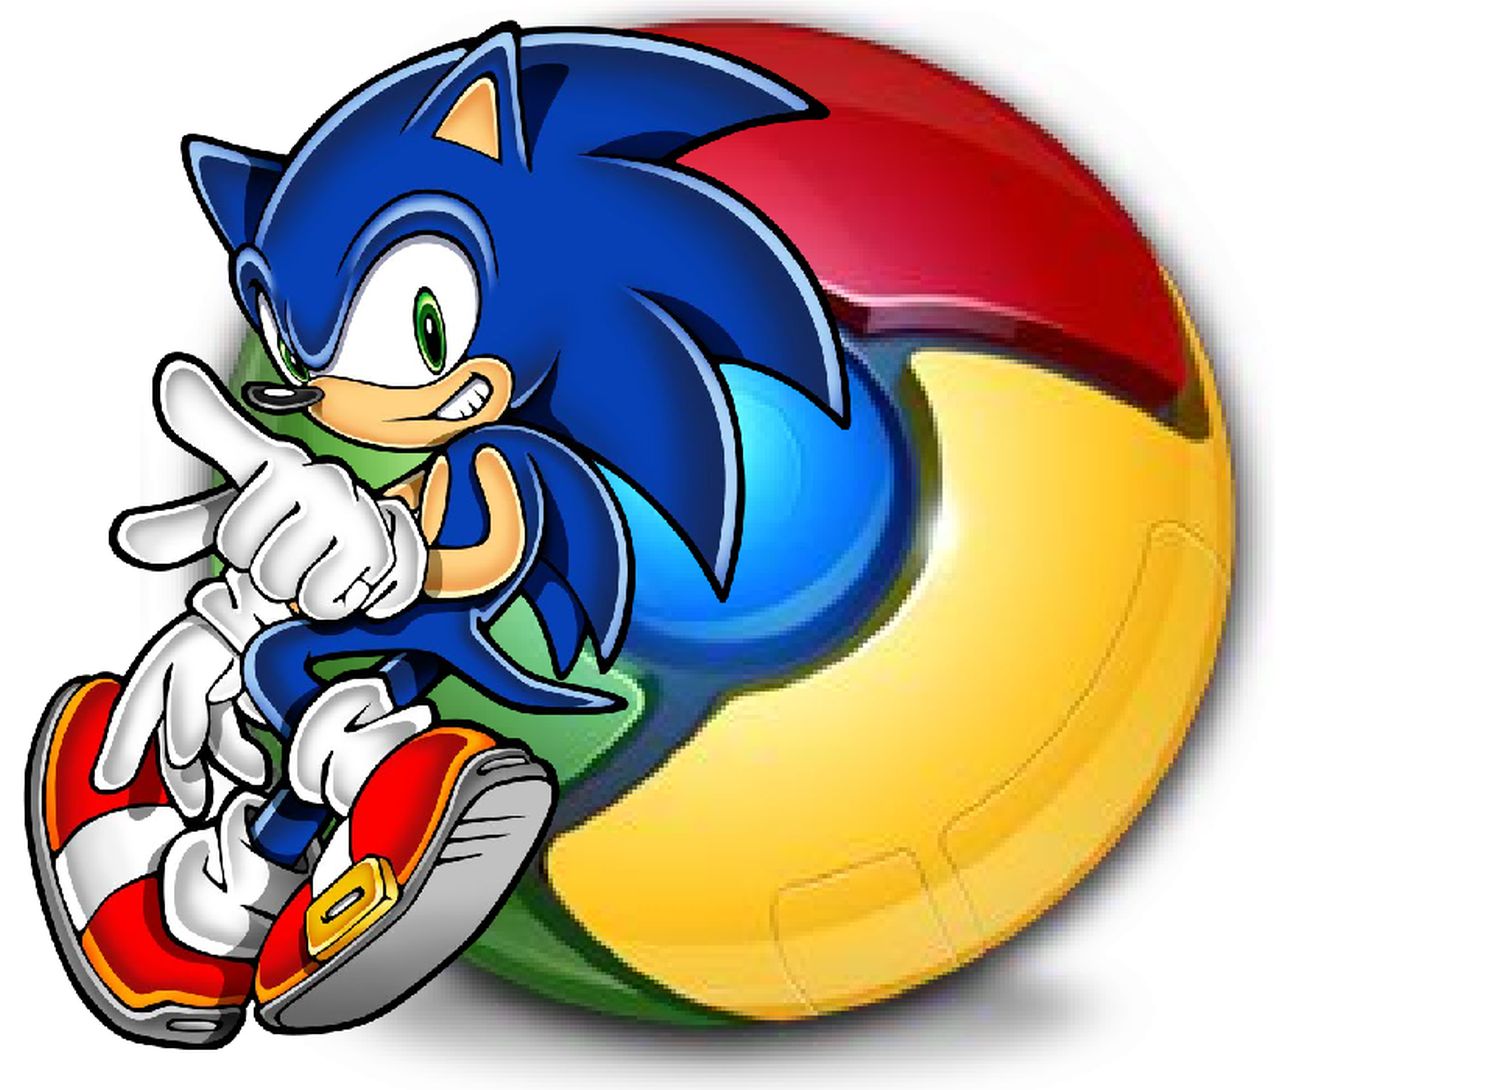 Google Chrome: Upgrade für das Dino-Spiel - so lässt sich der Dinosaurier  durch Sonic & Co. ersetzen (Video) - GWB